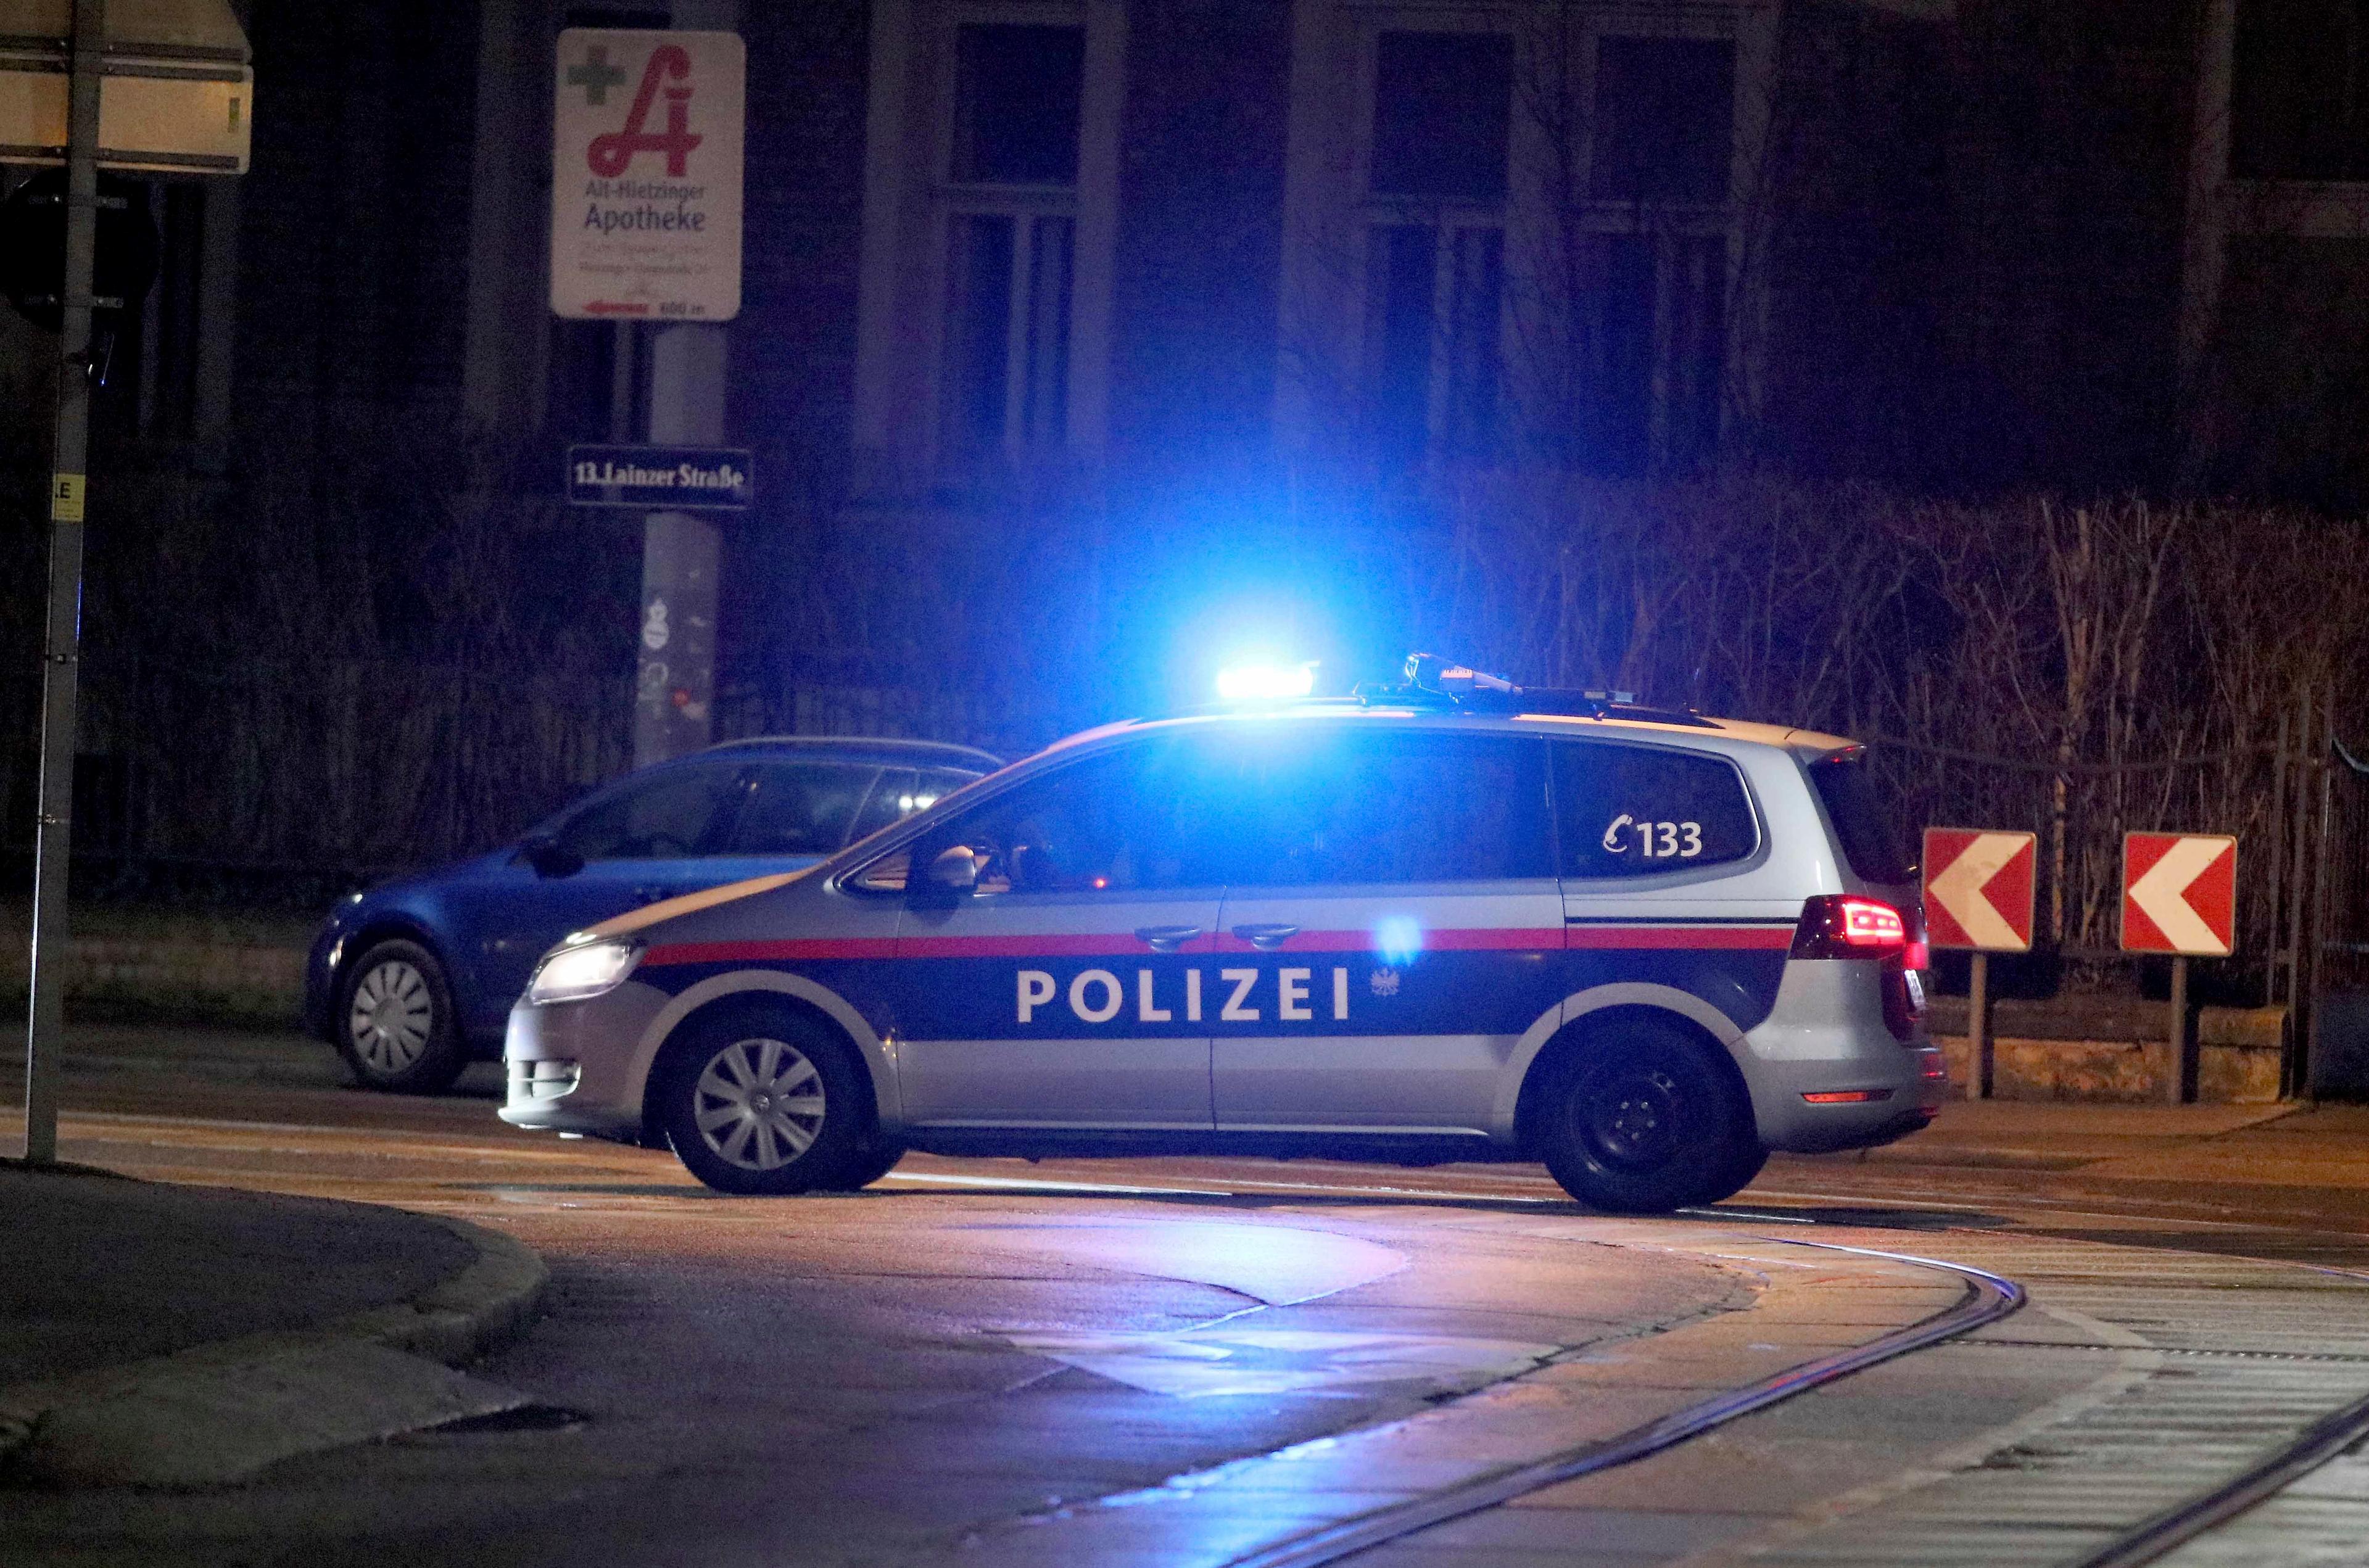 Fyra personer har omkommit i trafikolycka med en svenskregistrerad bil i Österrike, uppger polisen. Arkivbild. Foto: Ronald Zak/AP/TT